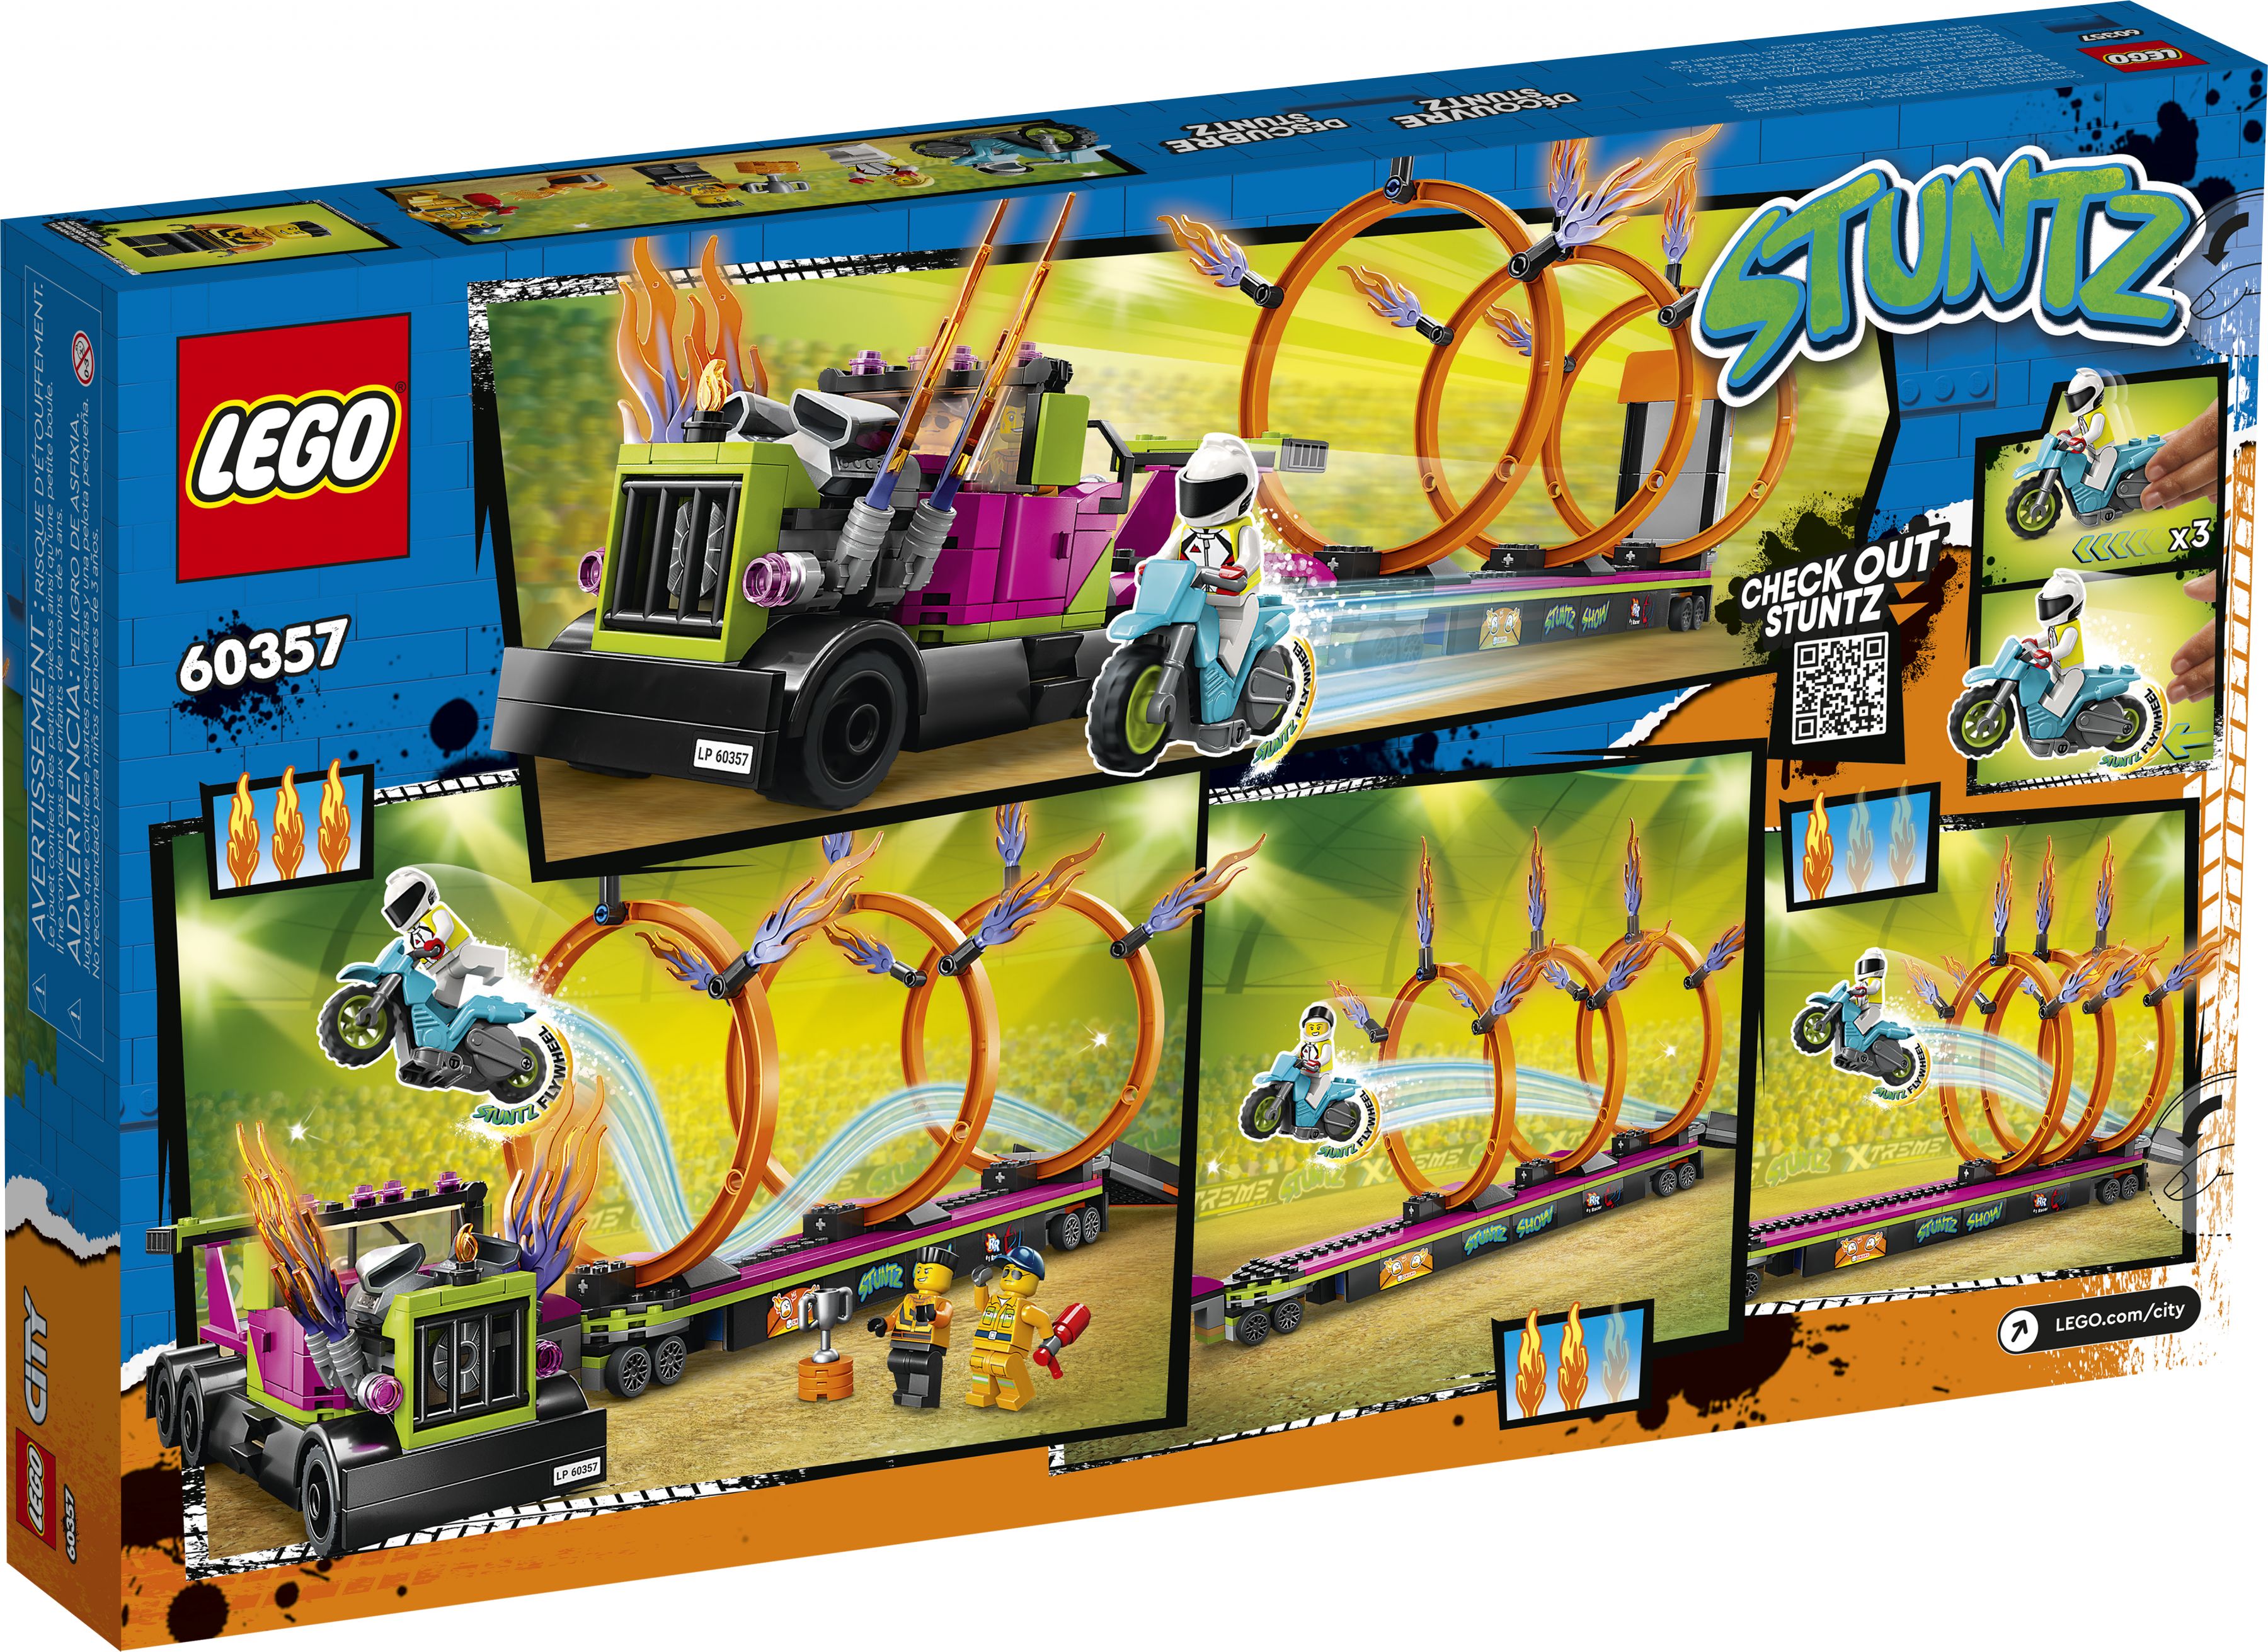 LEGO City 60357 Stunttruck & Feuerreifen-Challenge LEGO_60357_Box5_v39.jpg